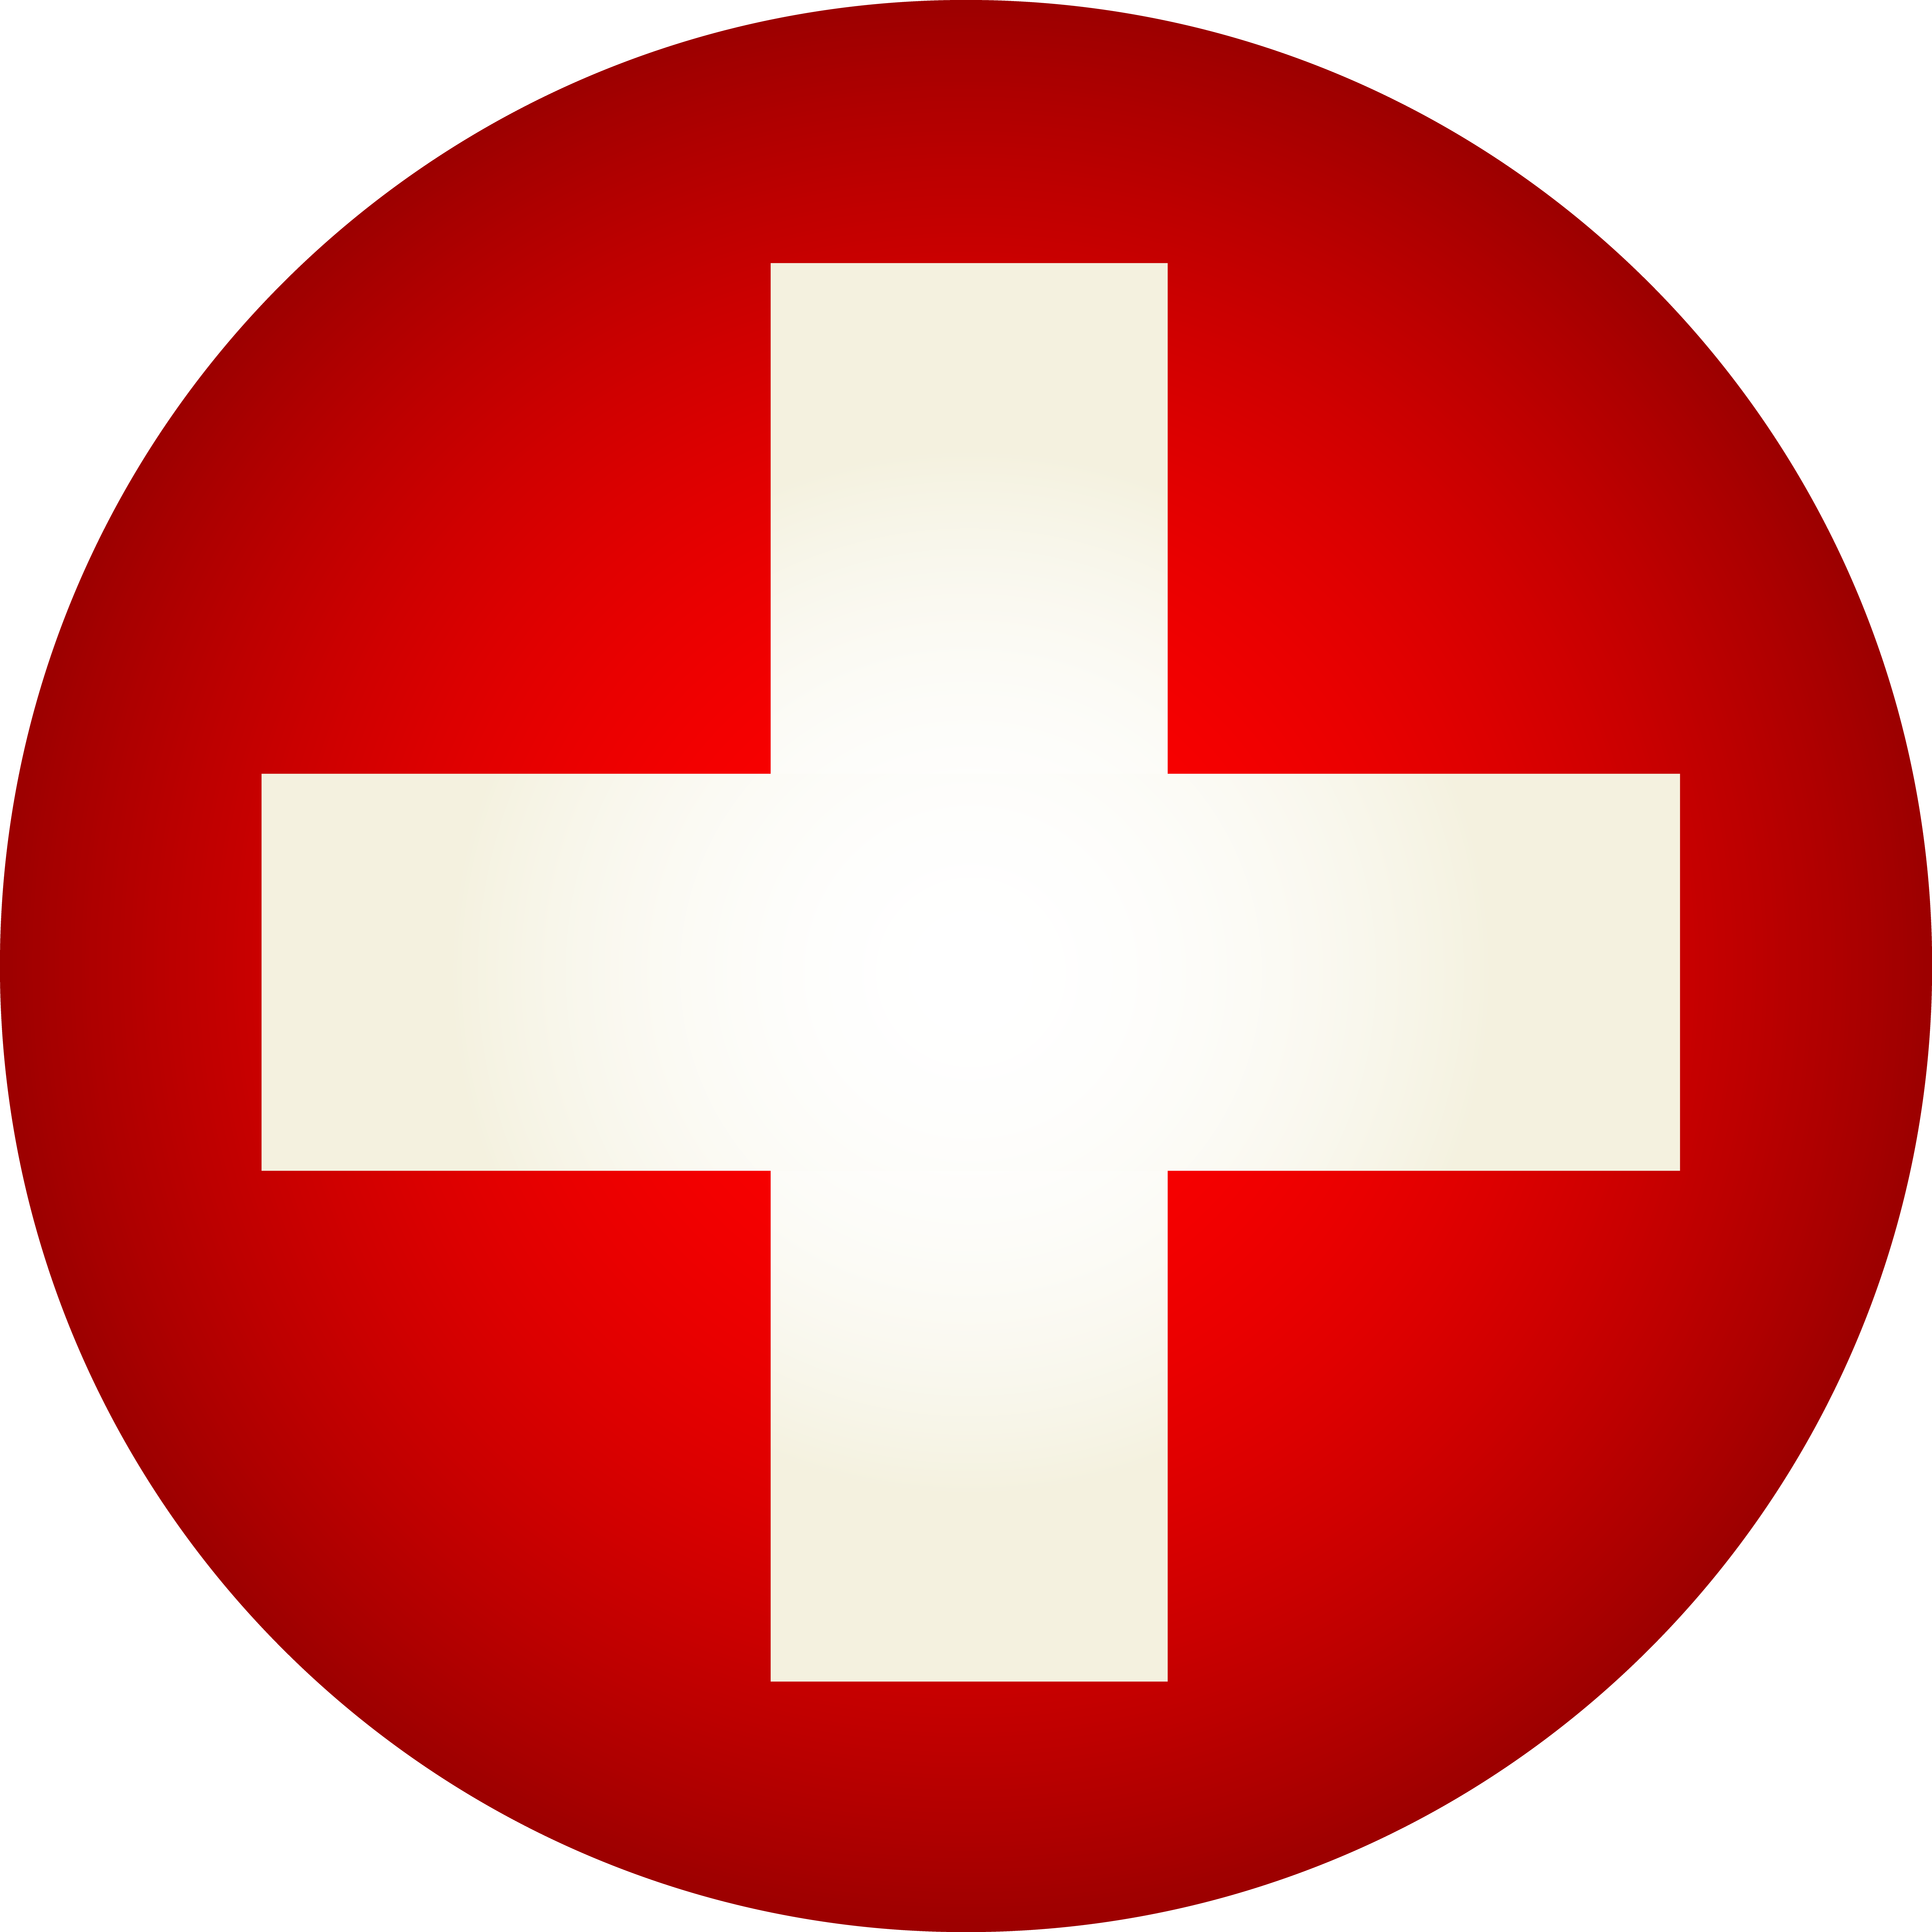 Знак красный круг с красным крестом. Красный крест Швейцария. Опознавательный знак ВВС Швейцарии. Флаг Швейцарии. Медицинский знак.